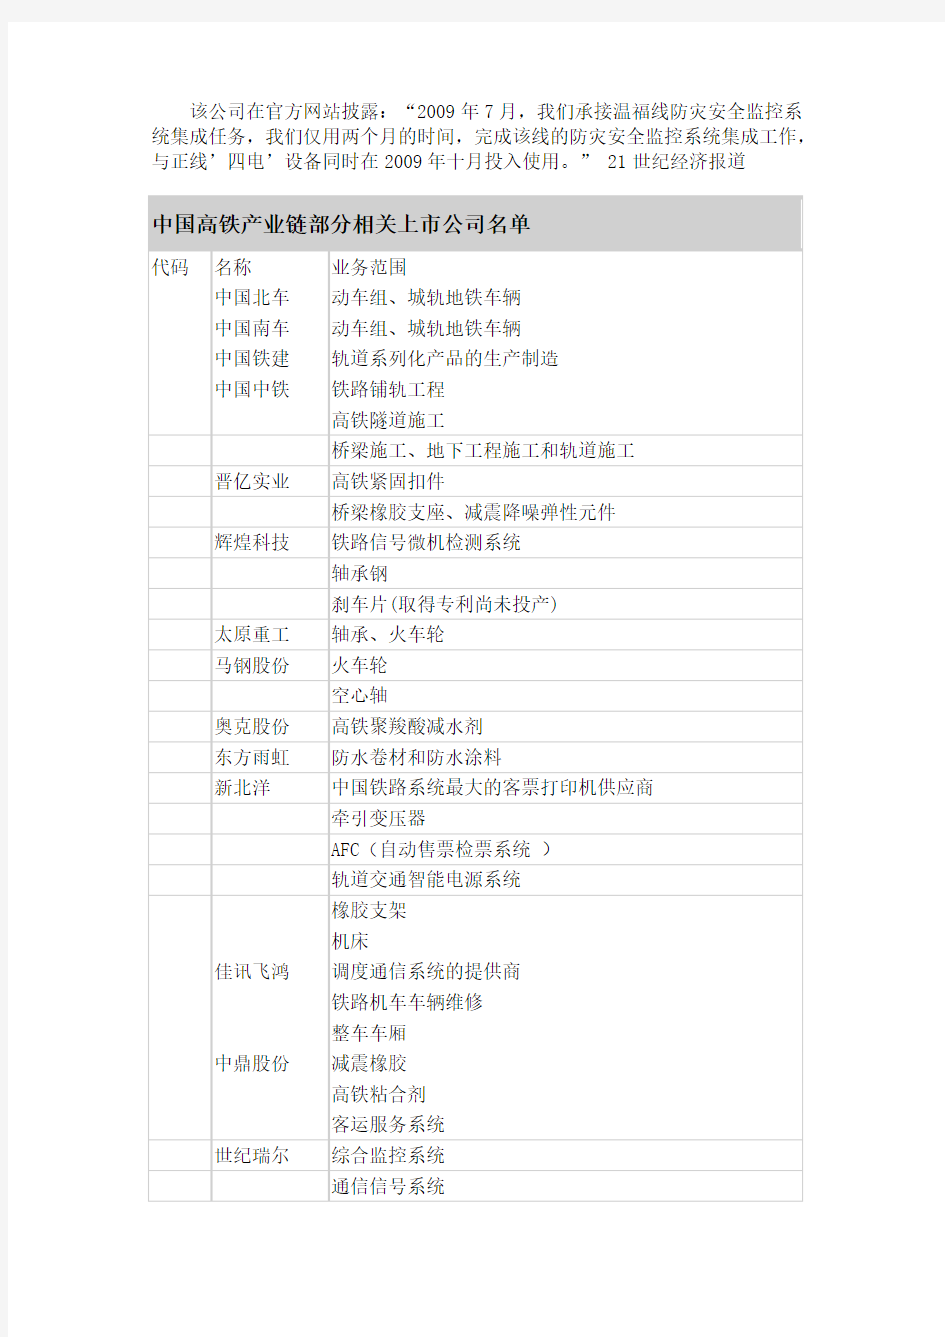 中国高铁产业链部分相关上市公司名单